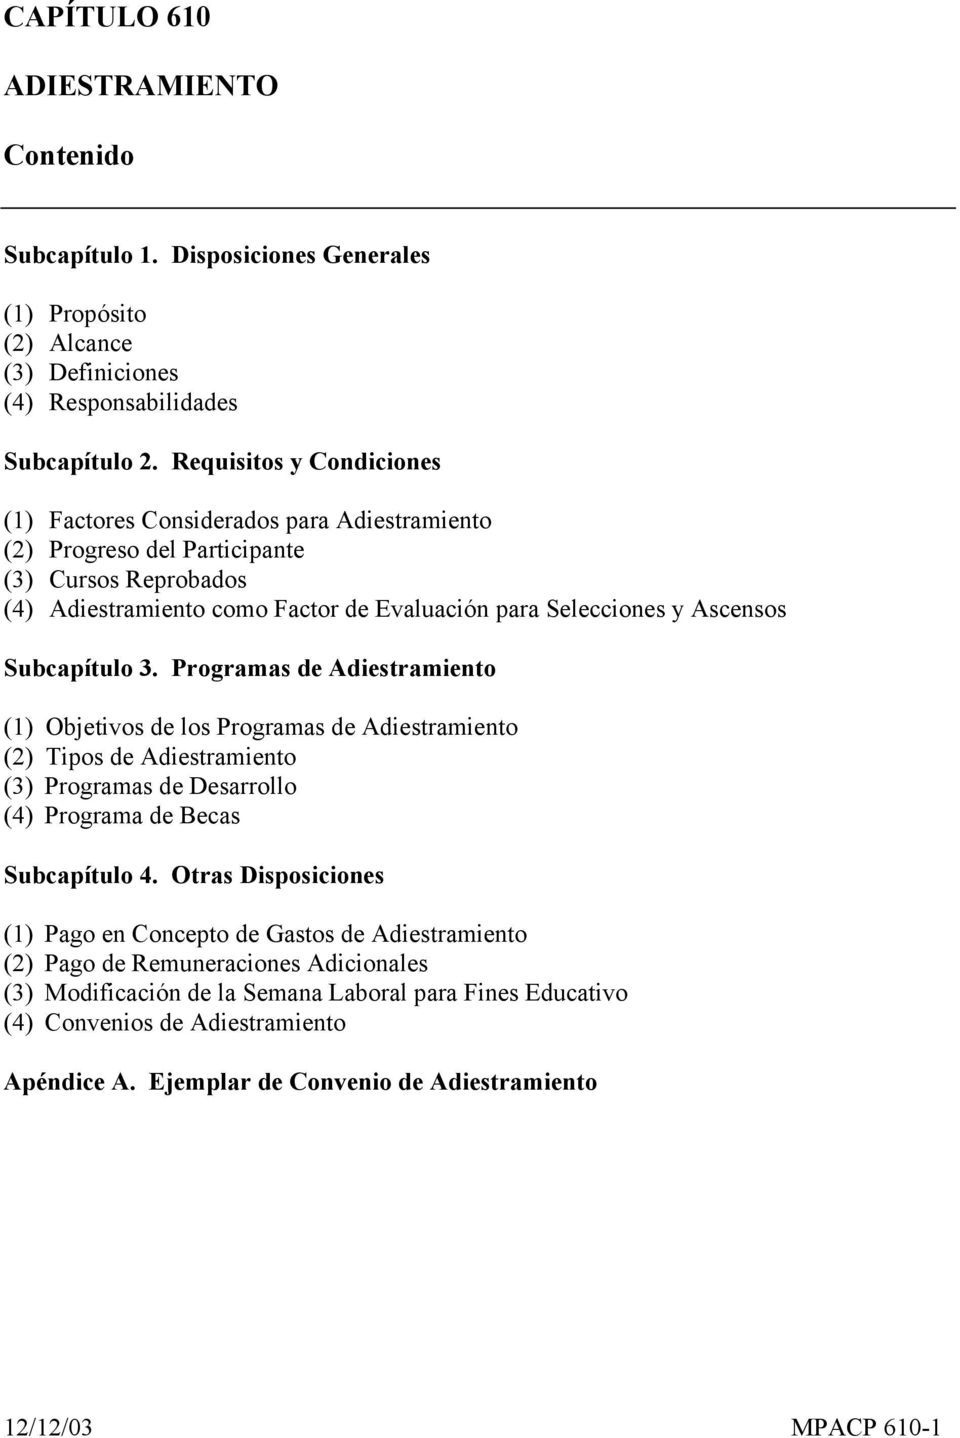 Subcapítulo 3. Programas de Adiestramiento (1) Objetivos de los Programas de Adiestramiento (2) Tipos de Adiestramiento (3) Programas de Desarrollo (4) Programa de Becas Subcapítulo 4.